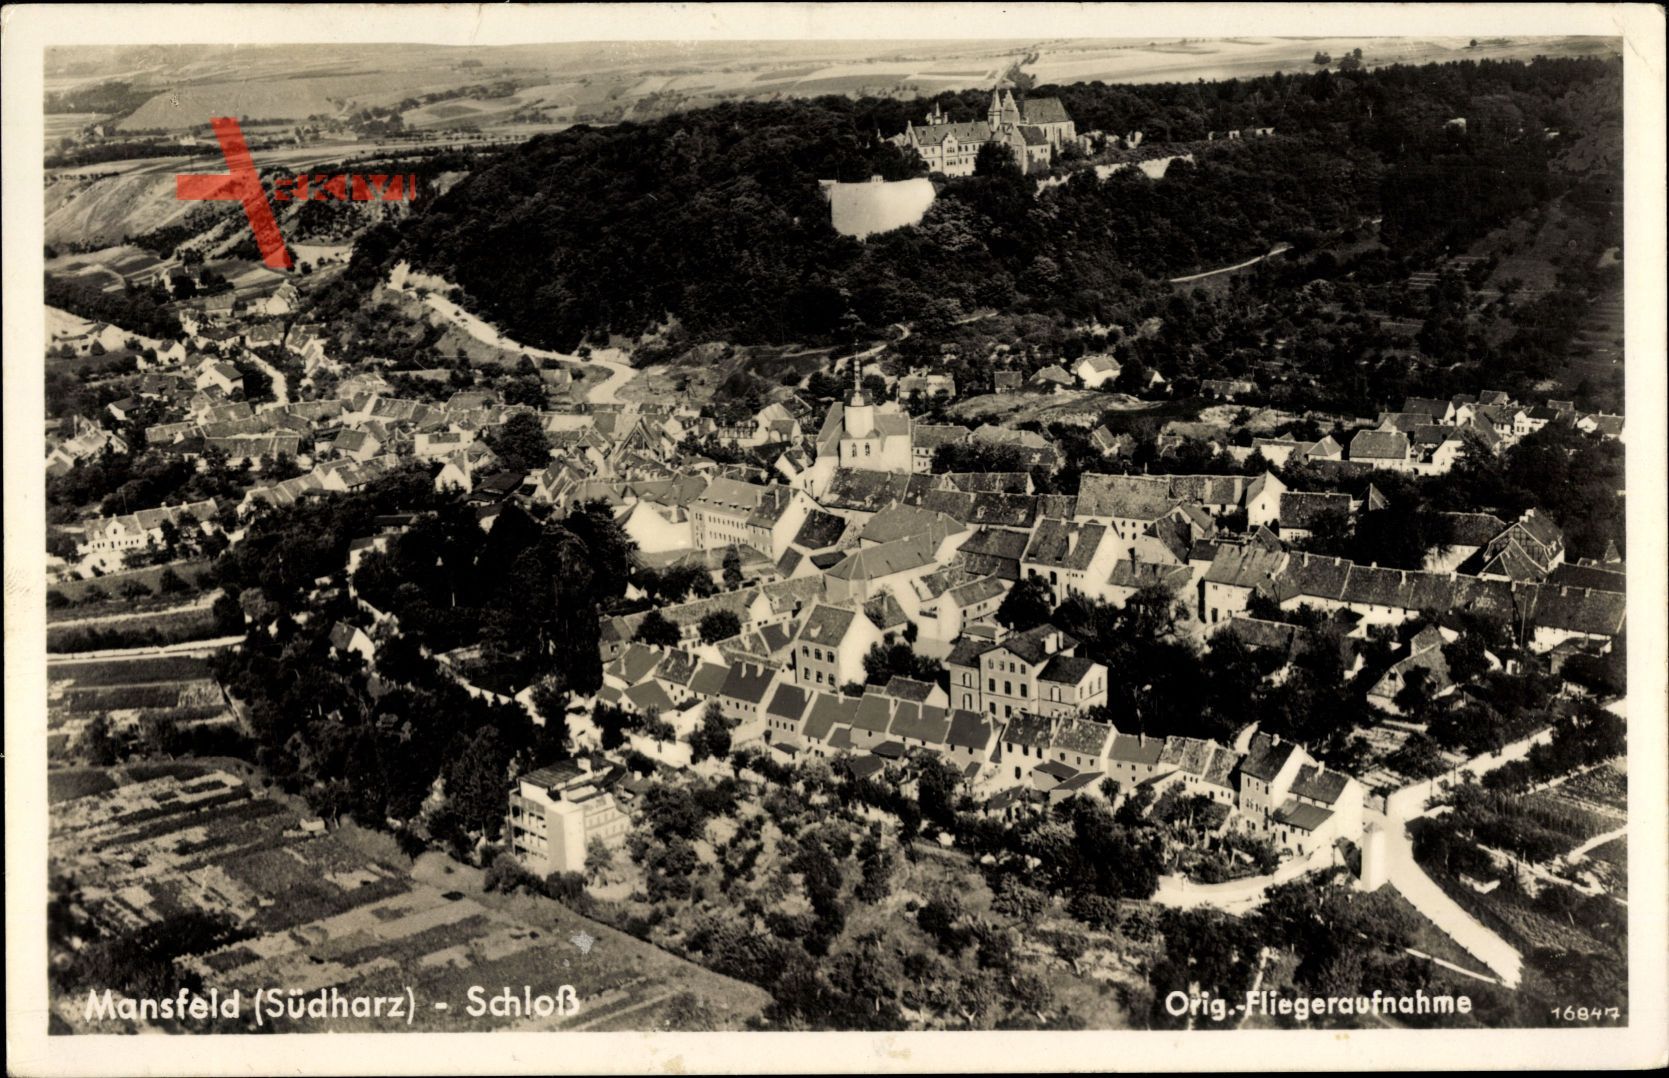 Mansfeld im Harzvorland, Fliegeraufnahme von Ort mit Schloss